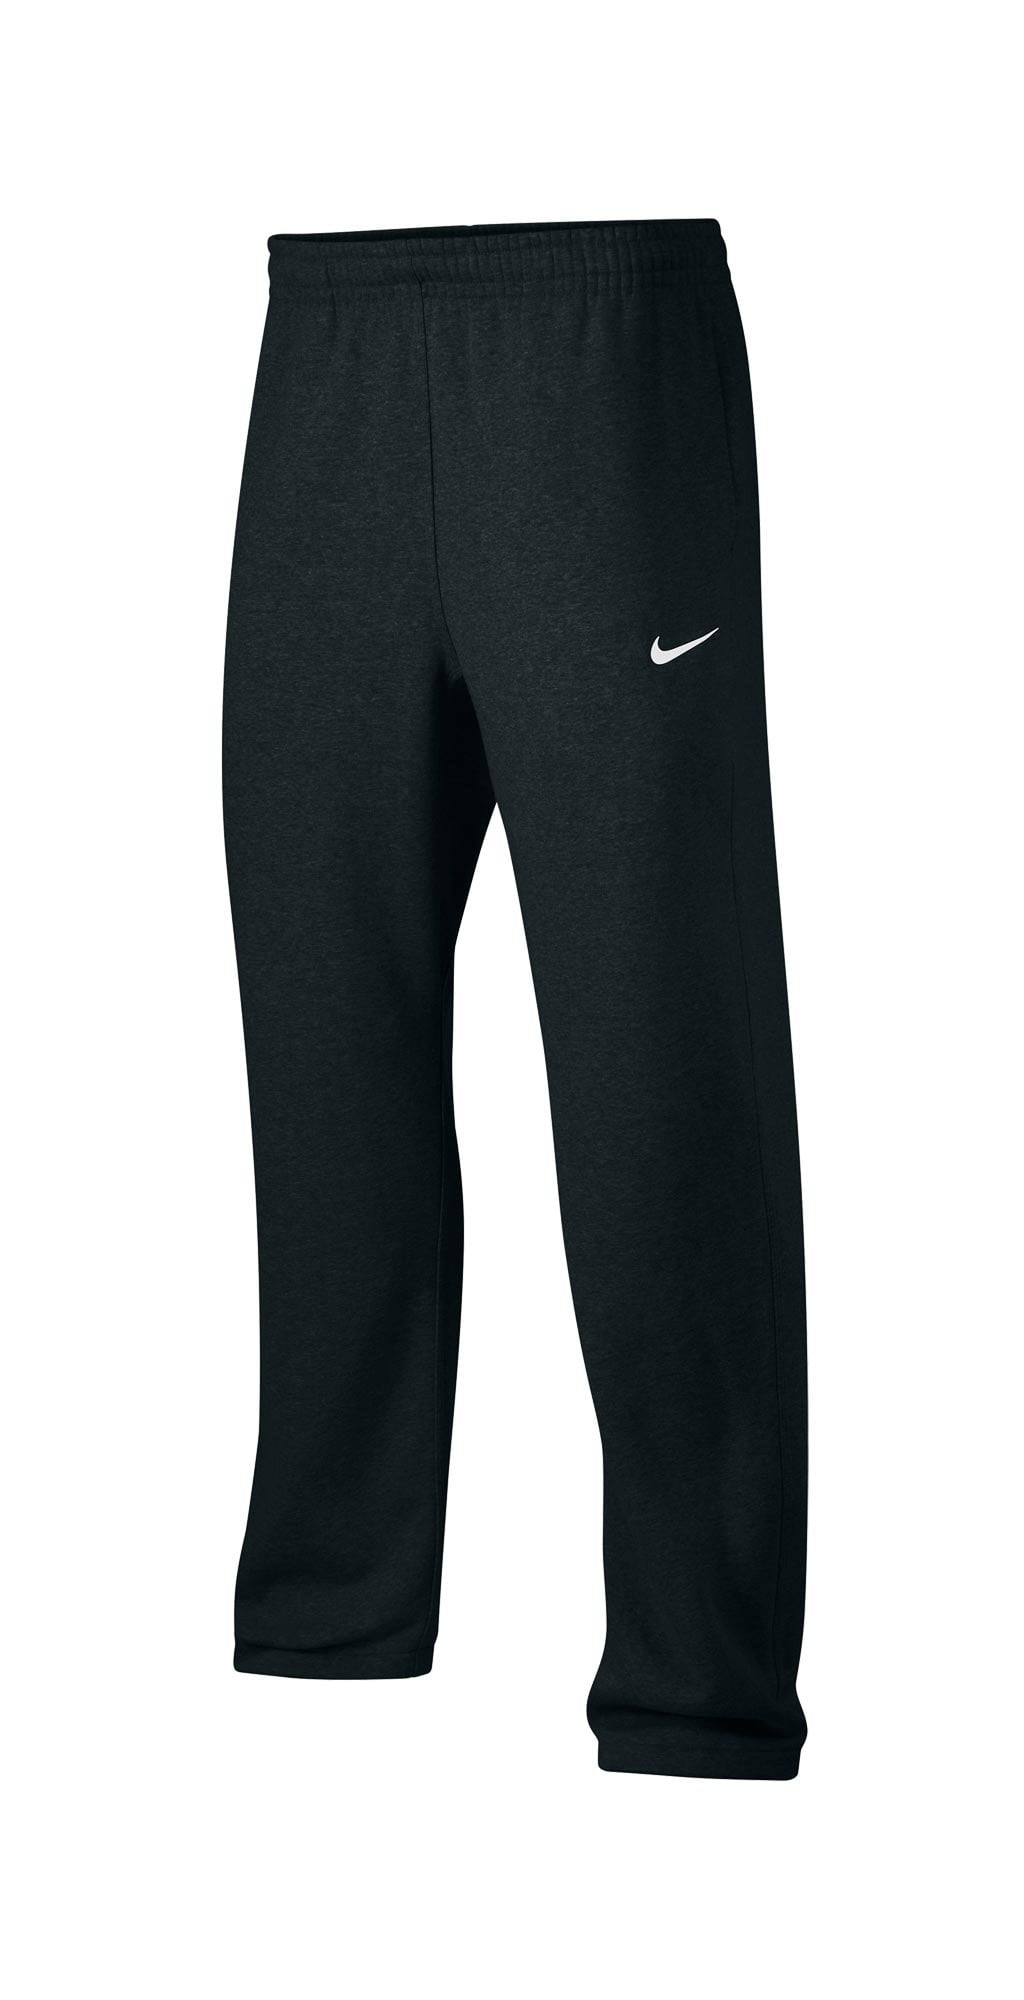 Nike Men's Active Fleece Sweat Pants Black 826425 010 (l) 